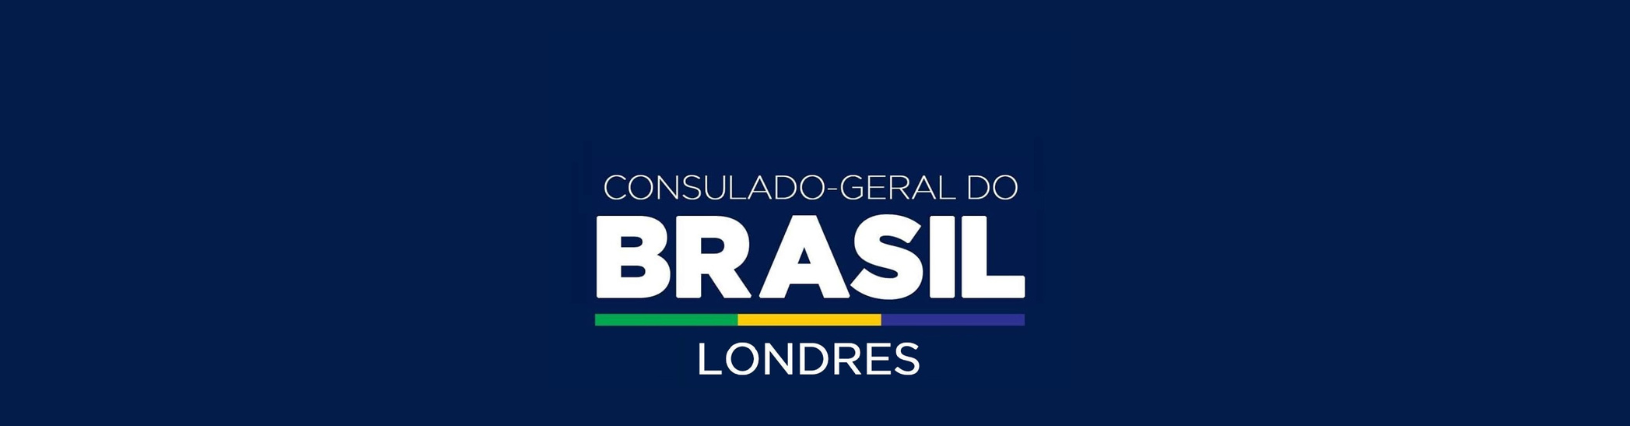 Consulado-Geral do Brasil em Londres — Ministério das Relações Exteriores